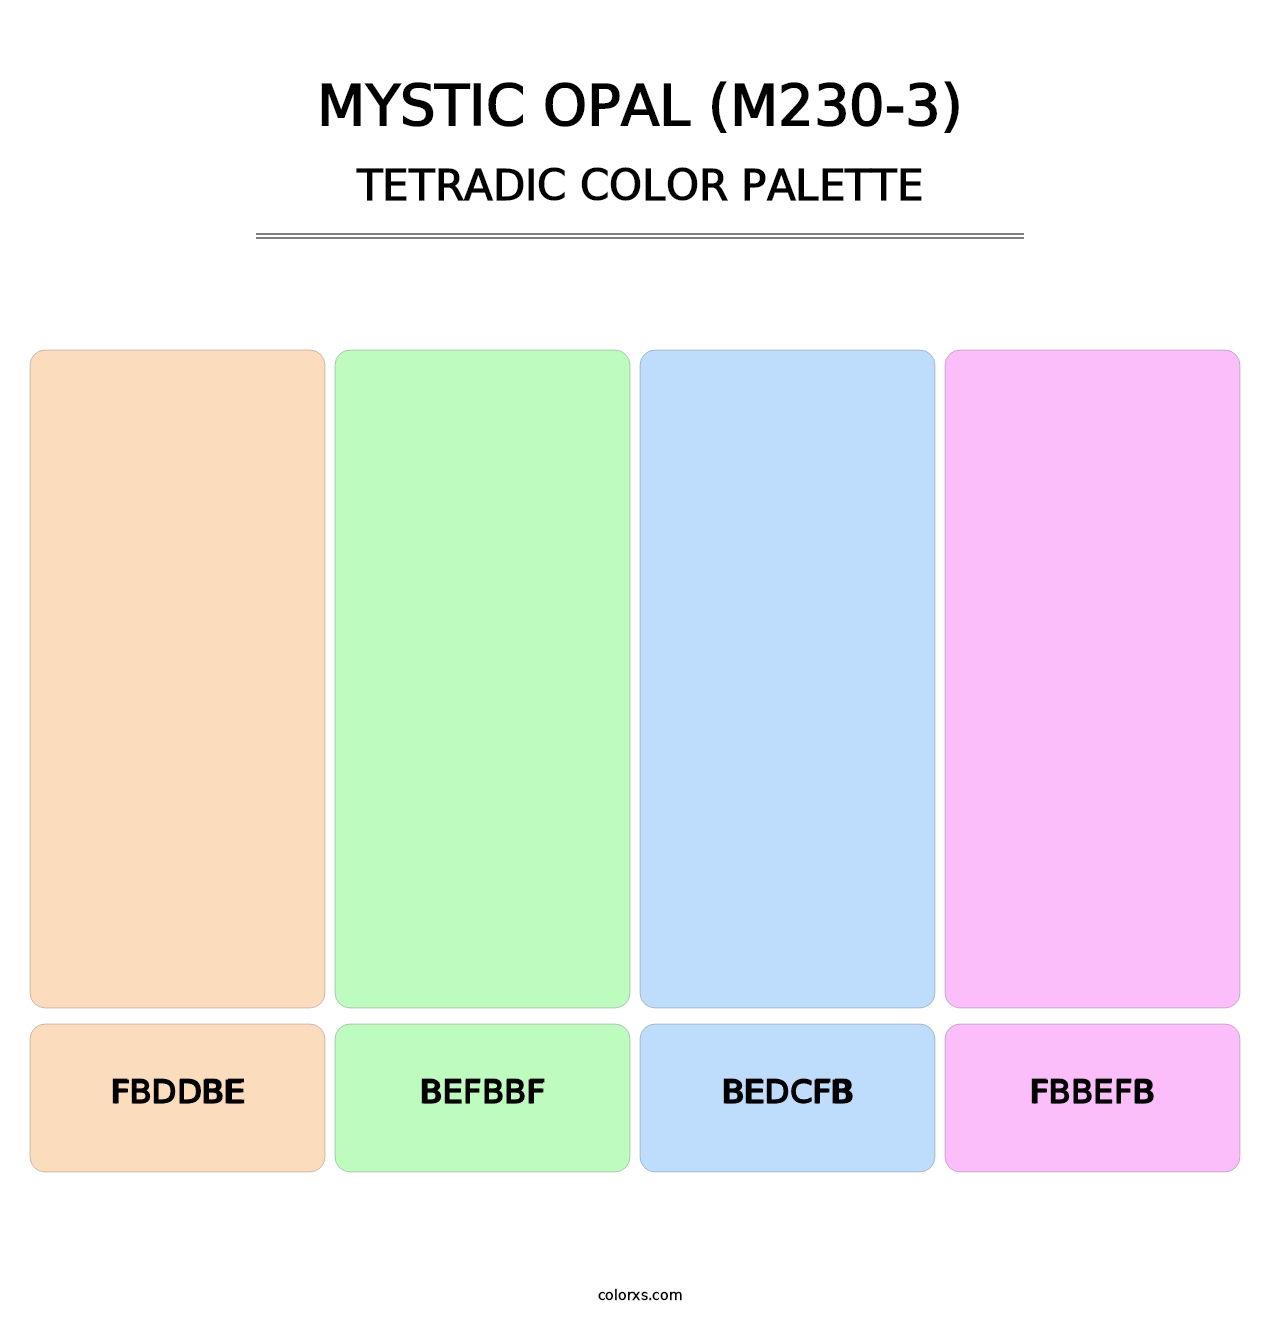 Mystic Opal (M230-3) - Tetradic Color Palette